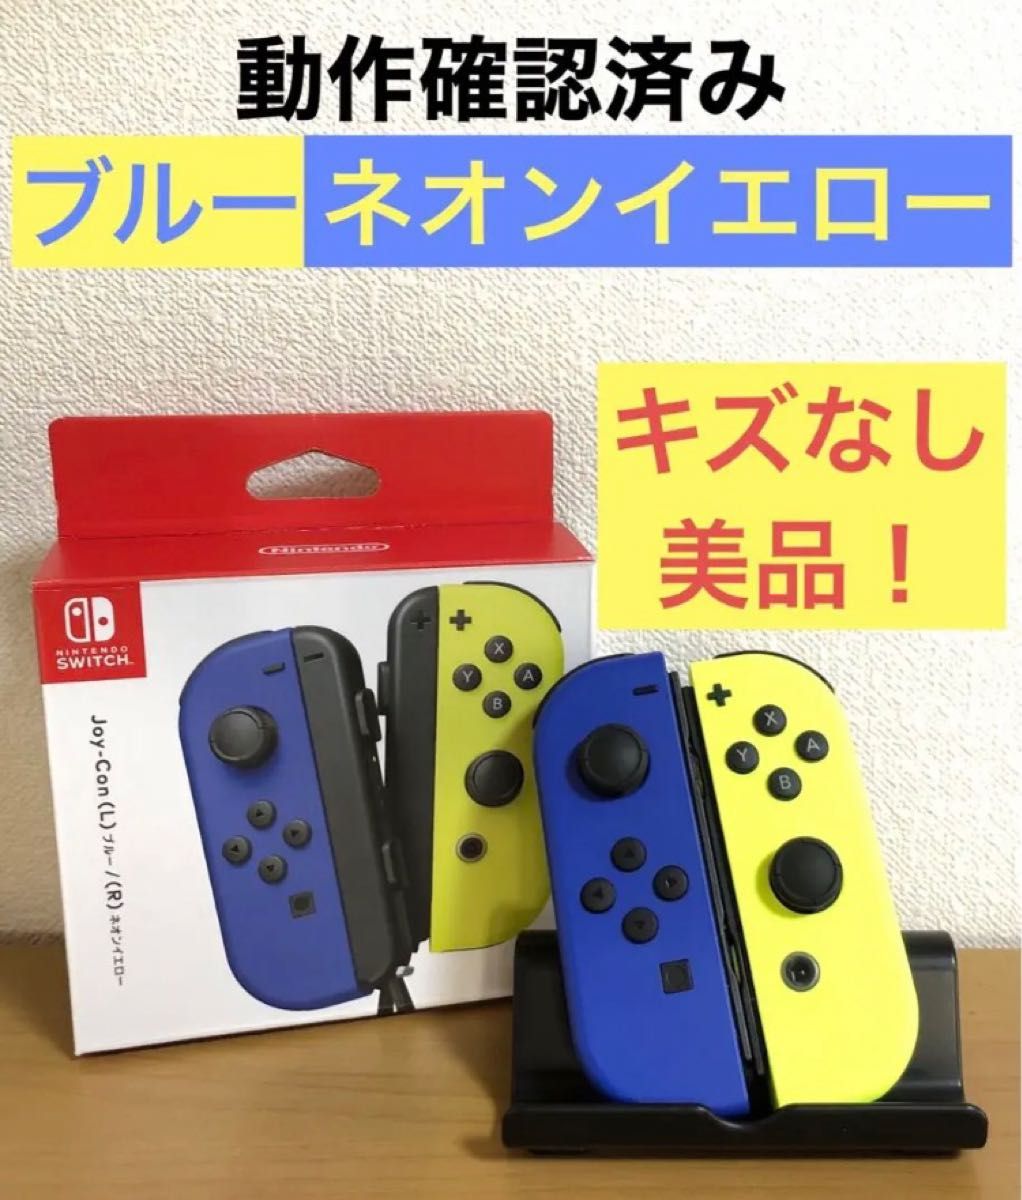 【正常動作品】Nintendo Switch ニンテンドースイッチ 純正 ジョイコン ブルー × ネオンイエロー Joy-Con